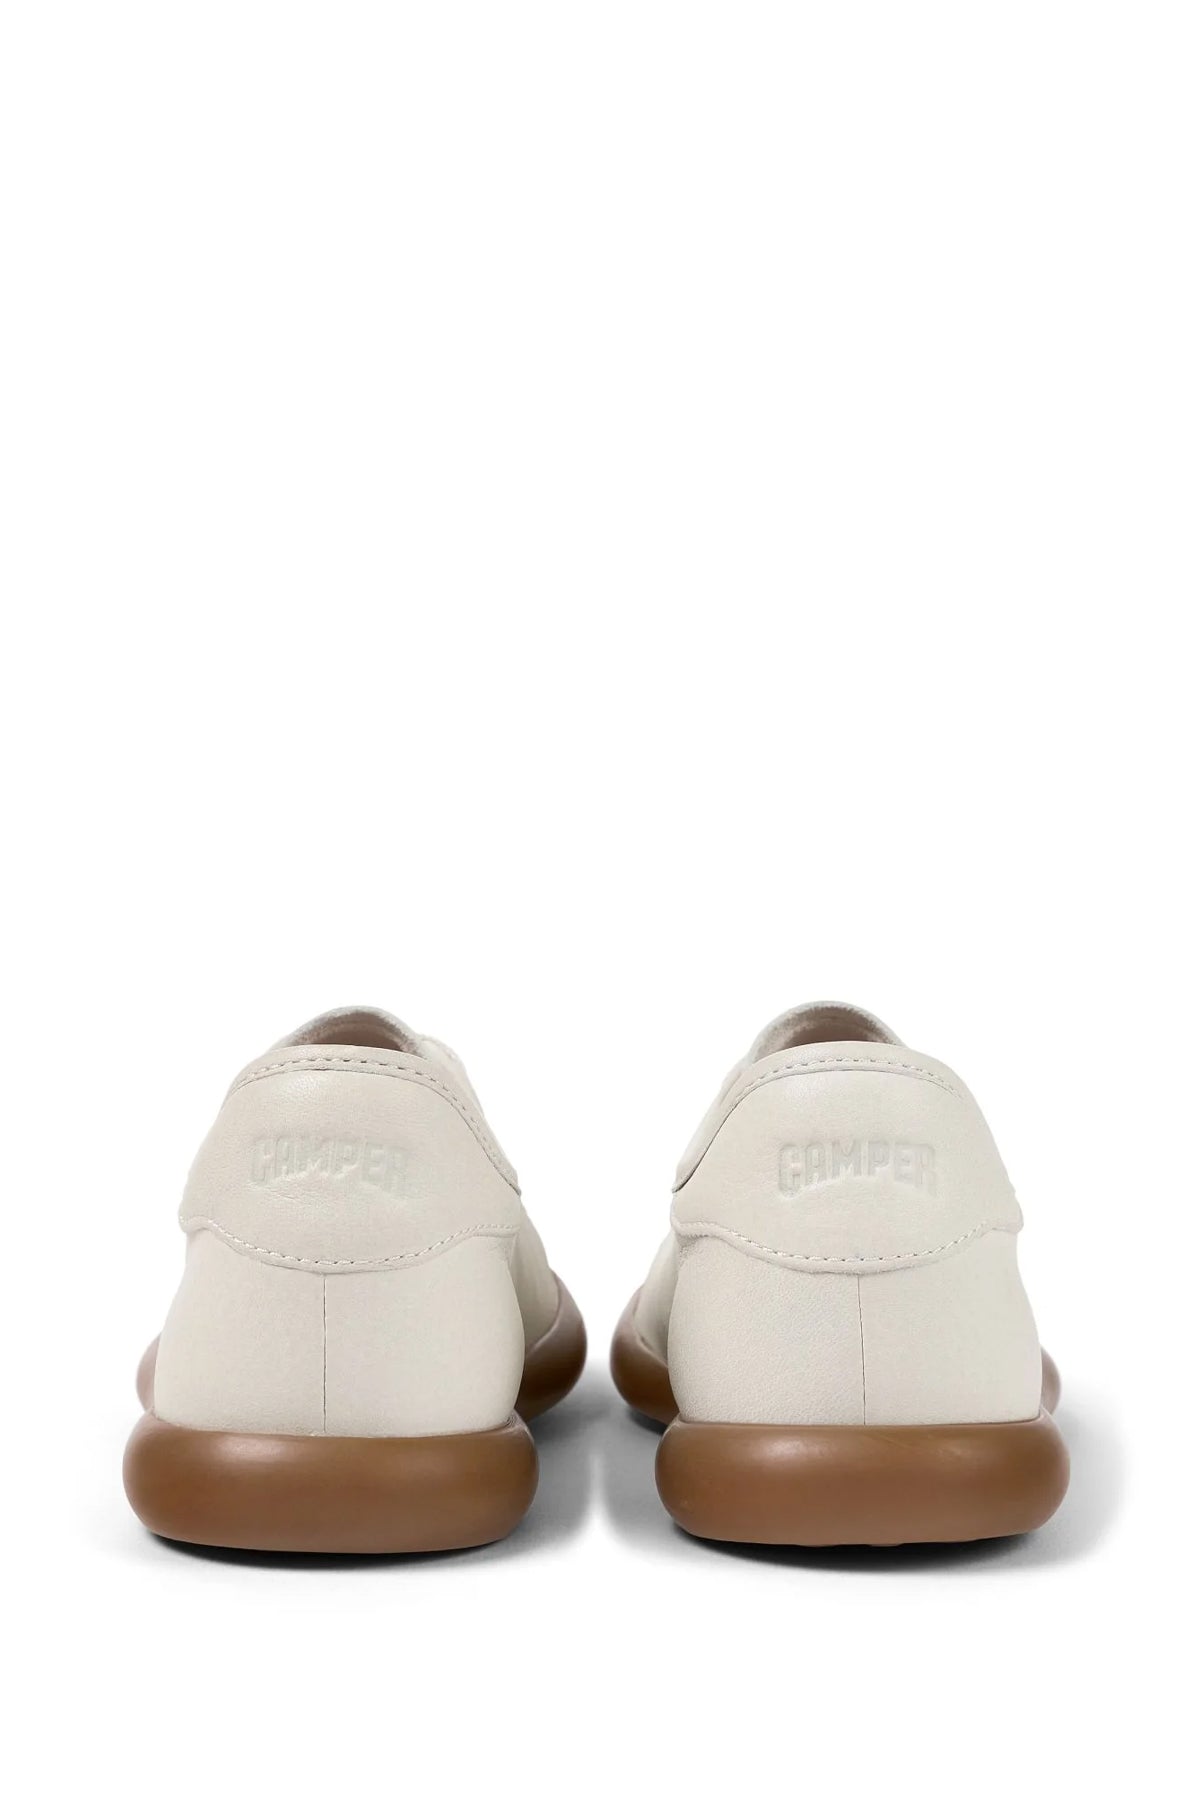 Camper Kadın Beyaz Deri Ayakkabı